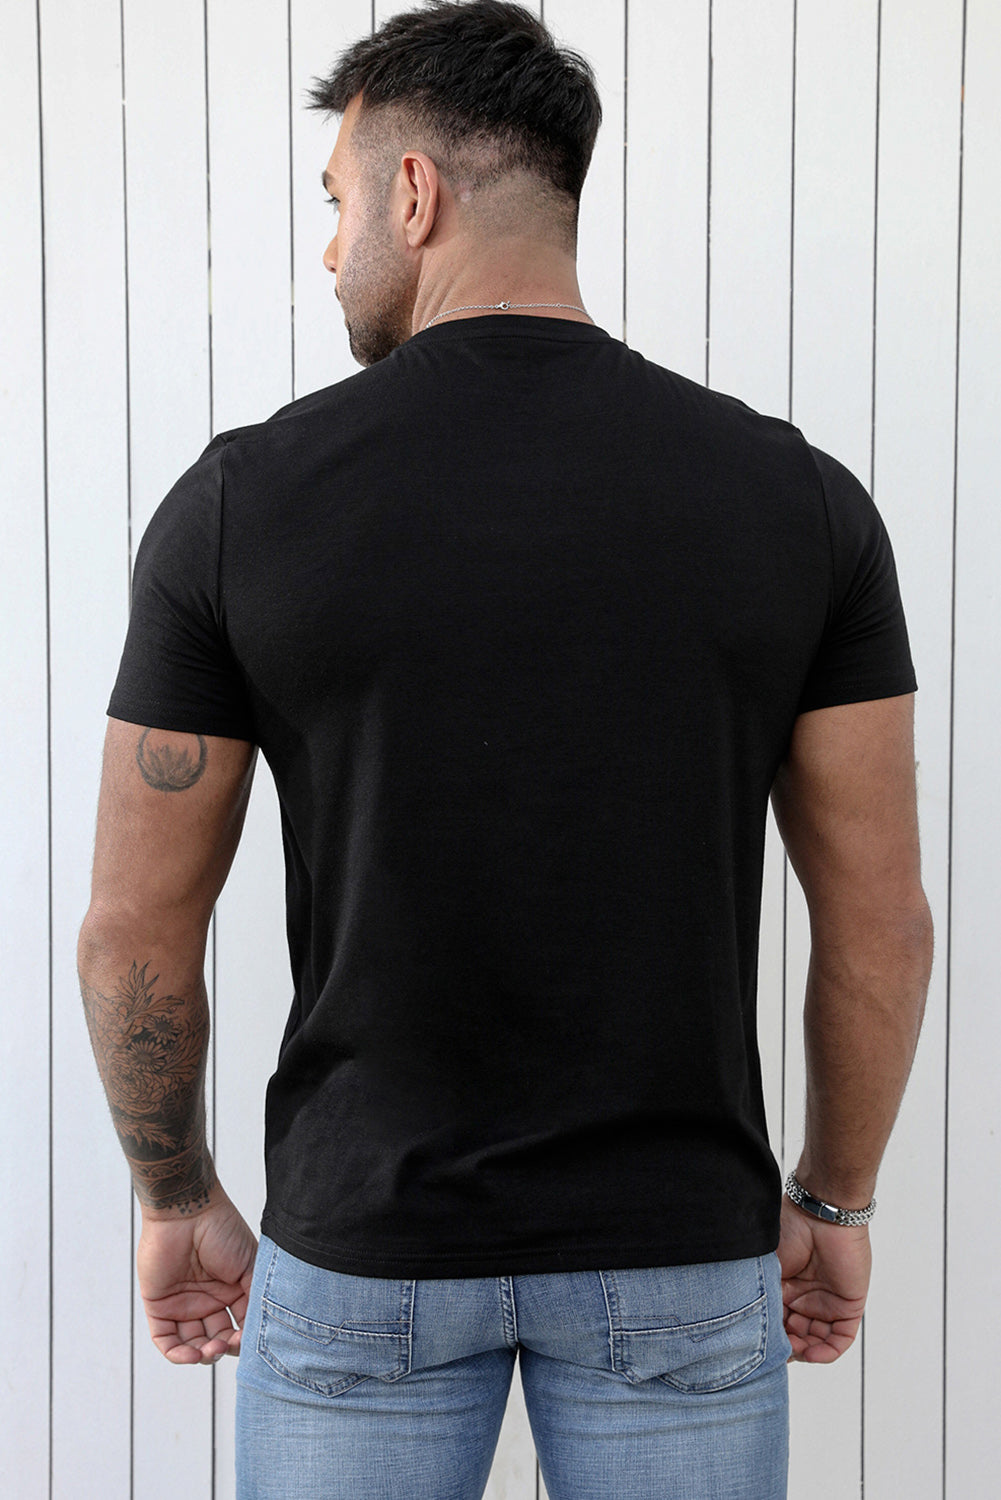 Black SOCCER DAD Letter Graphic Print V Neck T Shirt Men's Tops JT's Designer Fashion